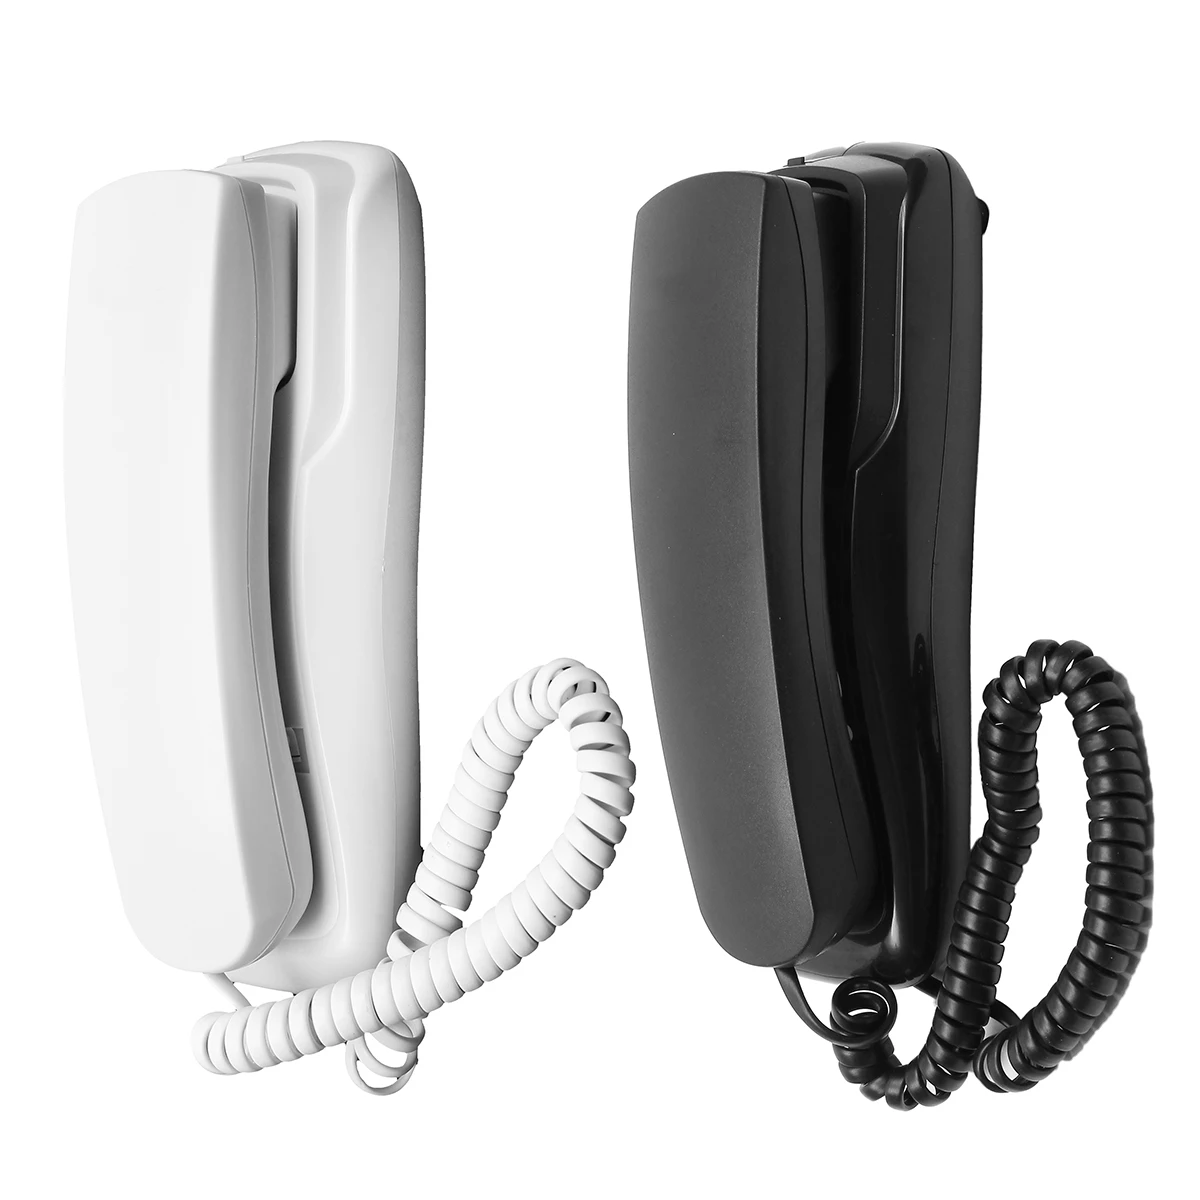 DC 48 В настенный телефон проводной телефон домашний офис отель Настольный регулятор громкости стационарный телефон белый/черный